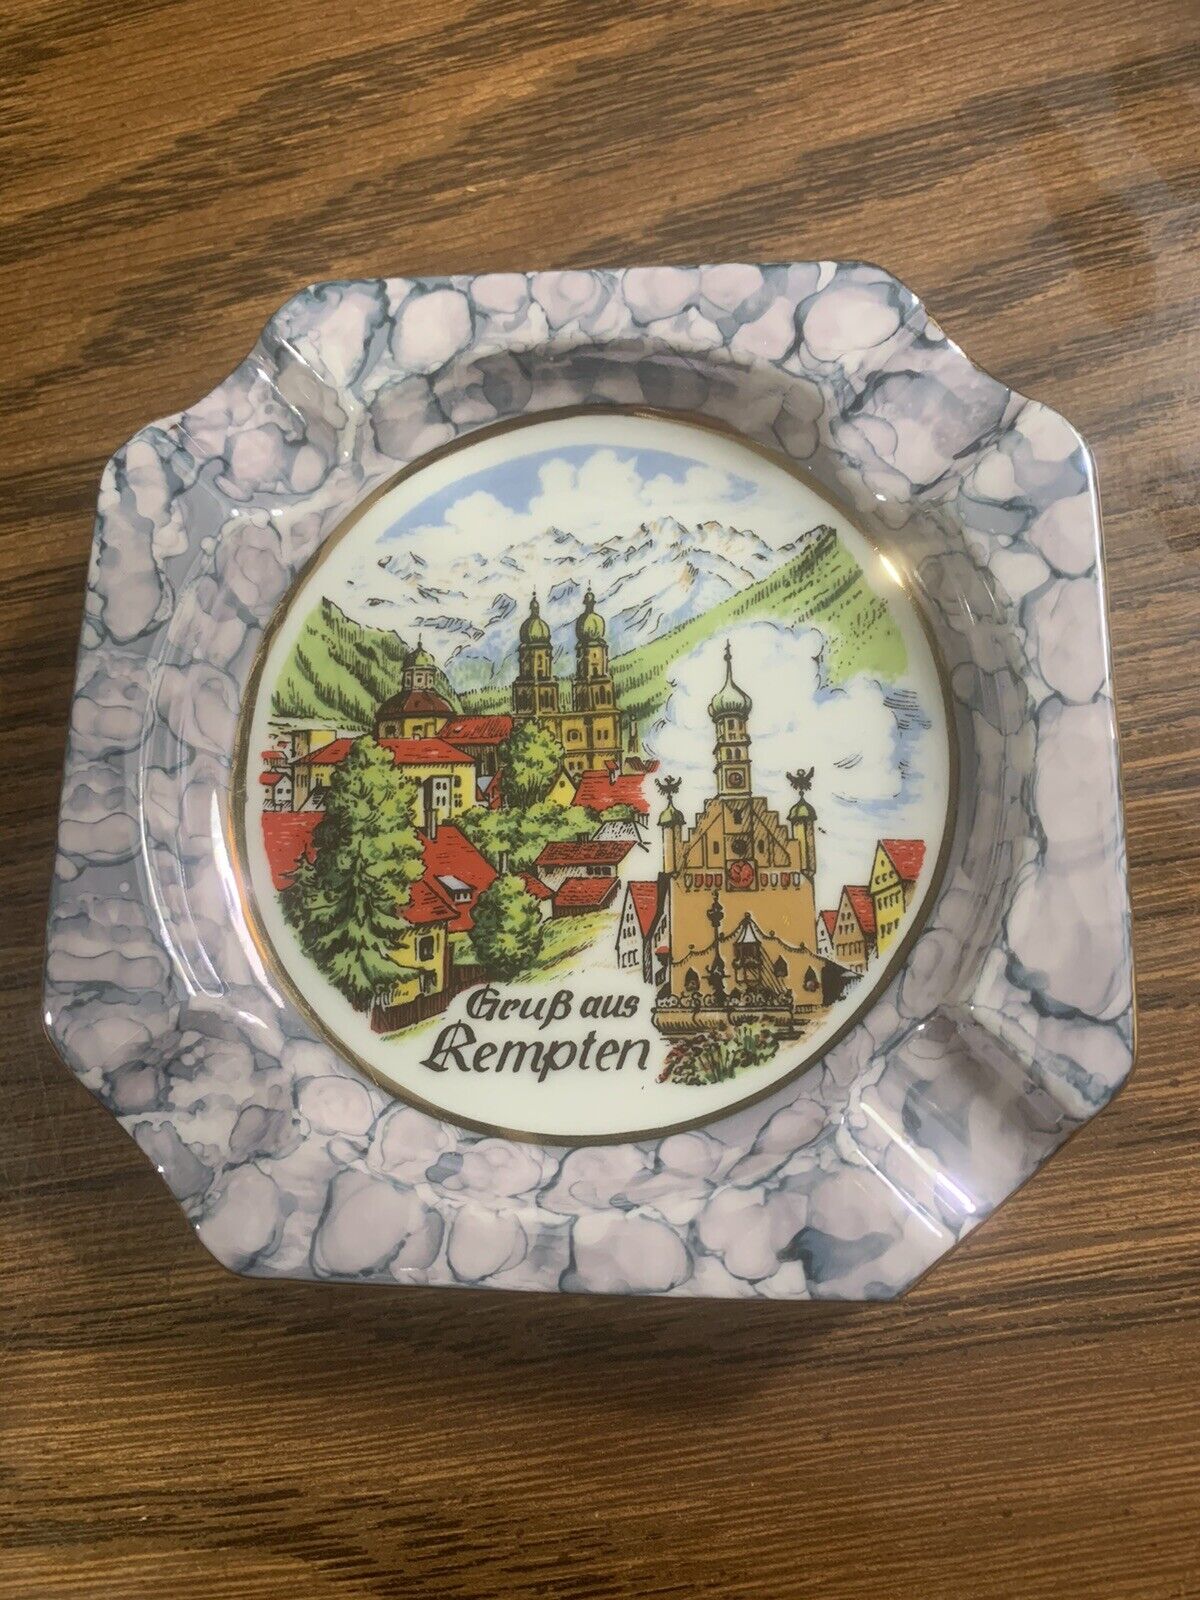 Vintage  German Souvenir Ashtray Grubaus Kempten 4 1/2 “X 4 1/2” Trinket Dish